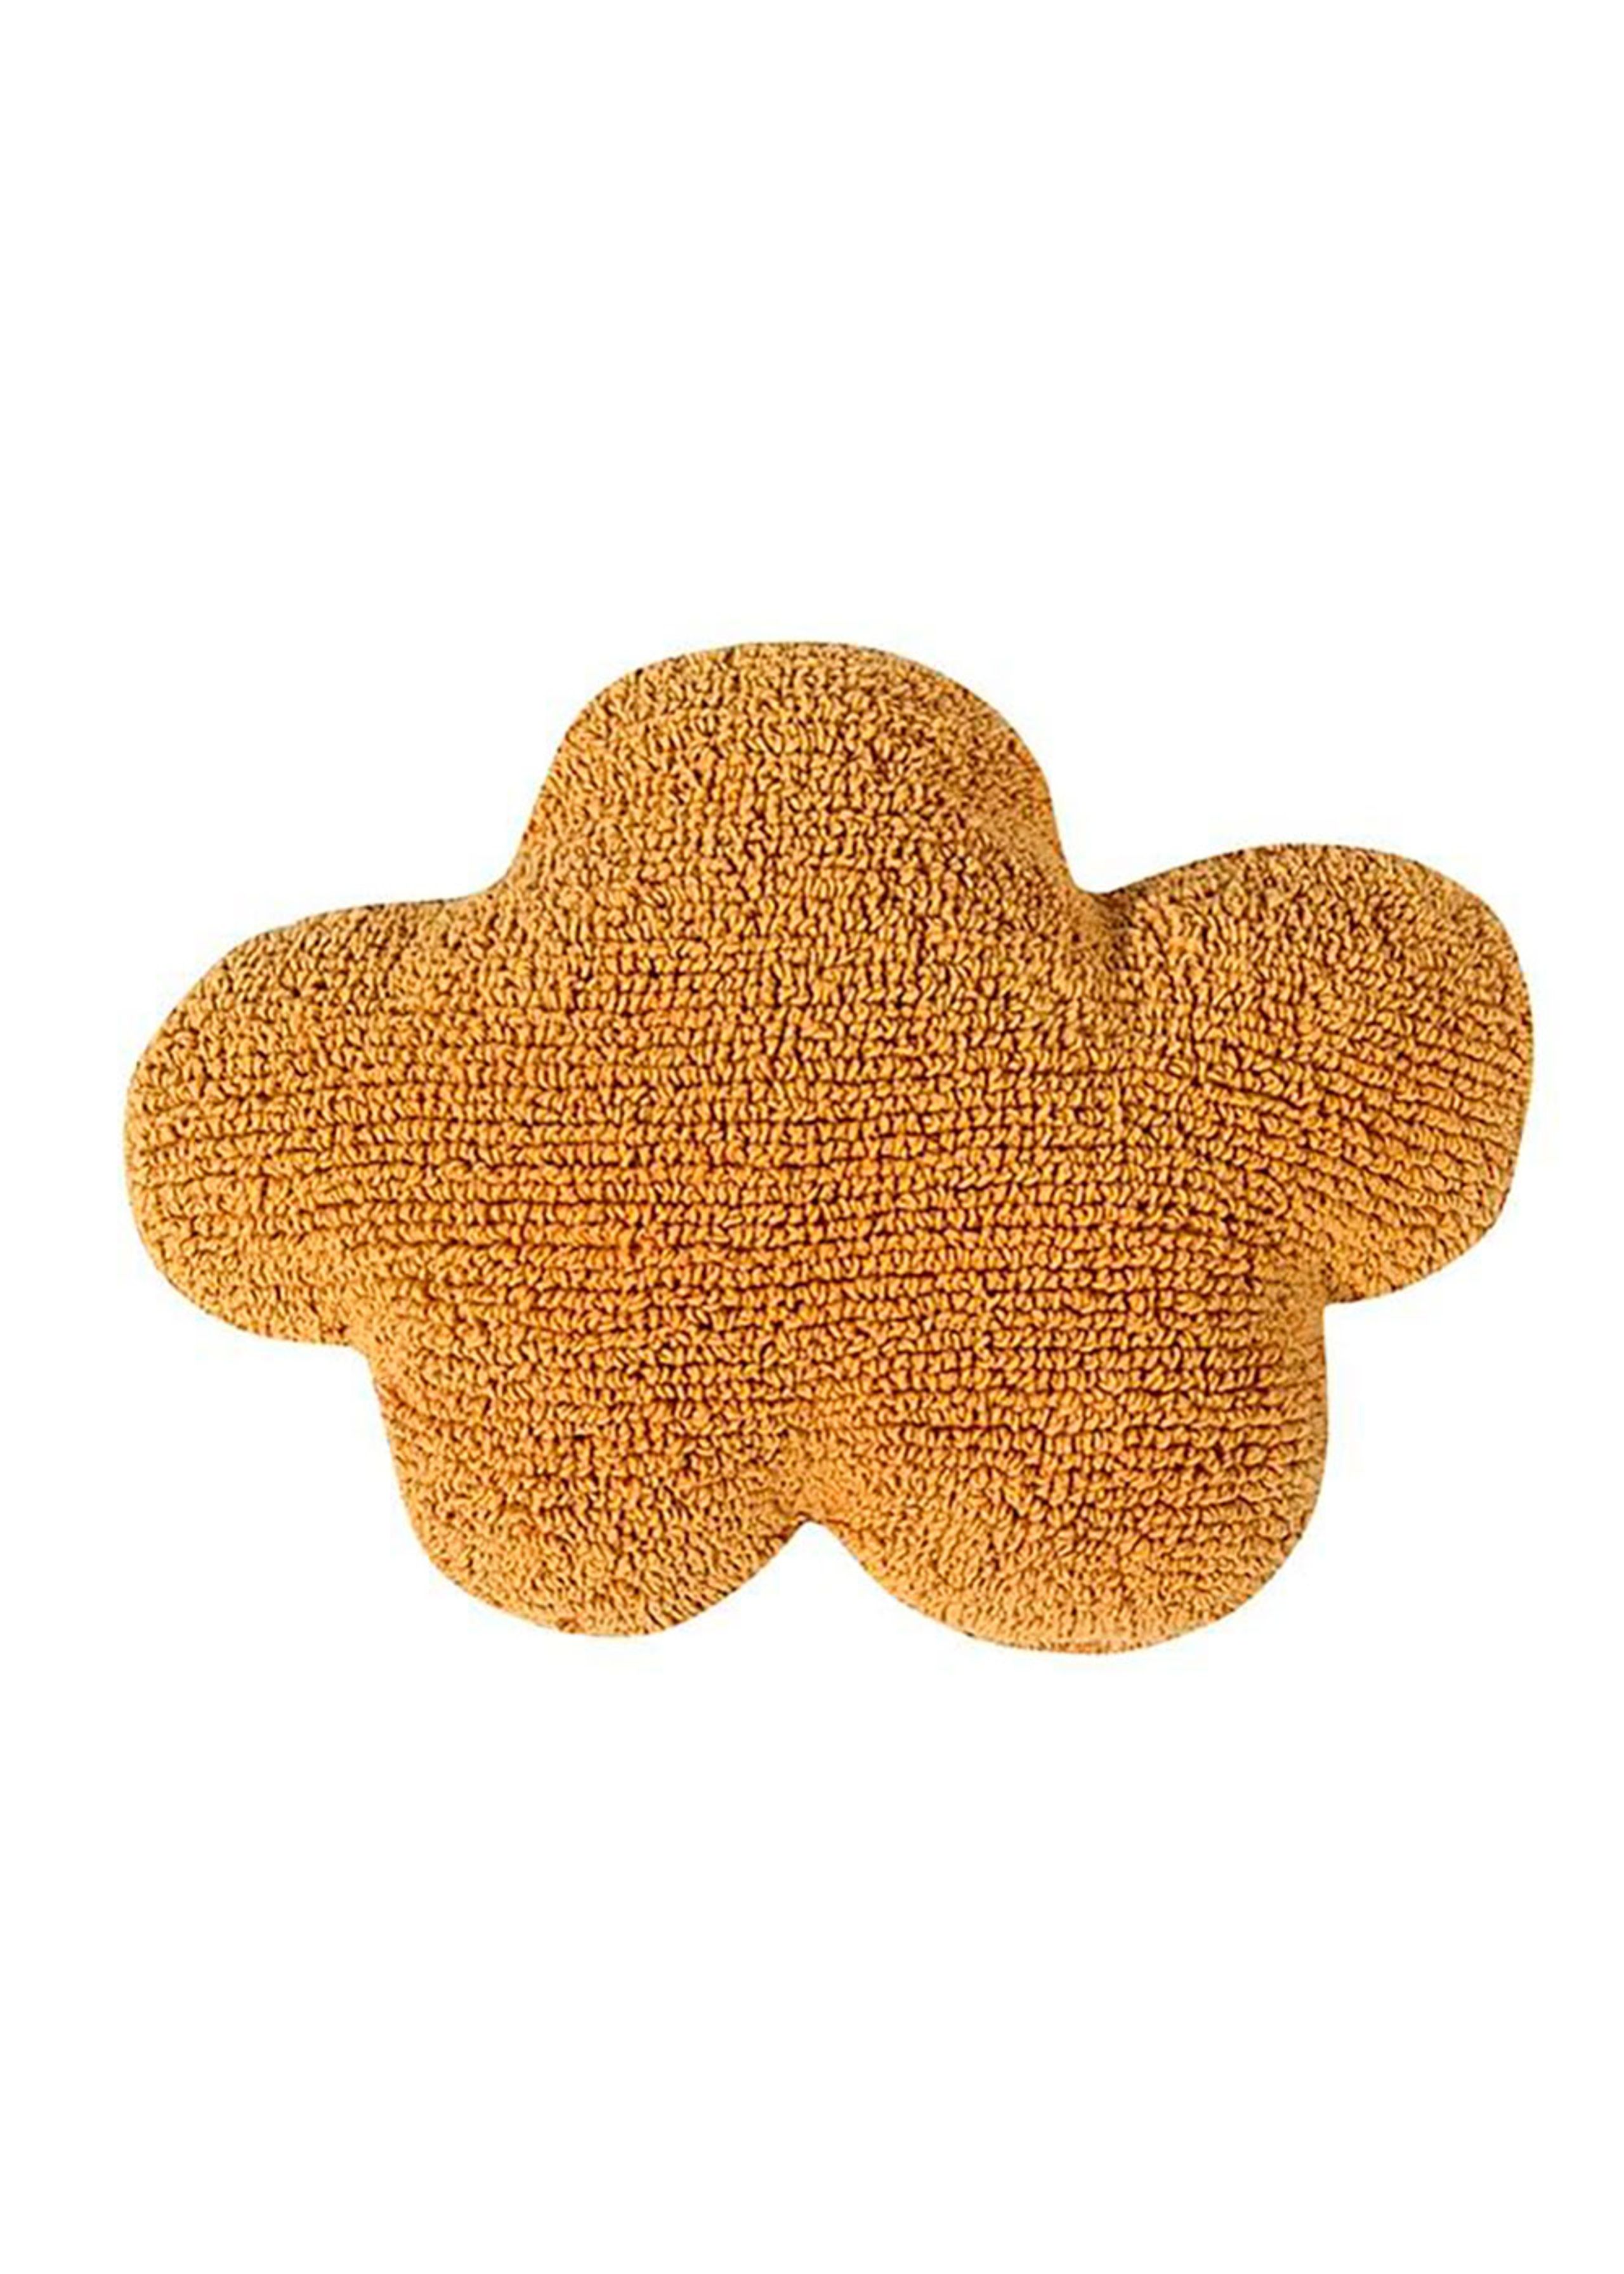 Lorena Canals - Kopfkissen für Kinder - Washable Cushion Cloud - Mustard